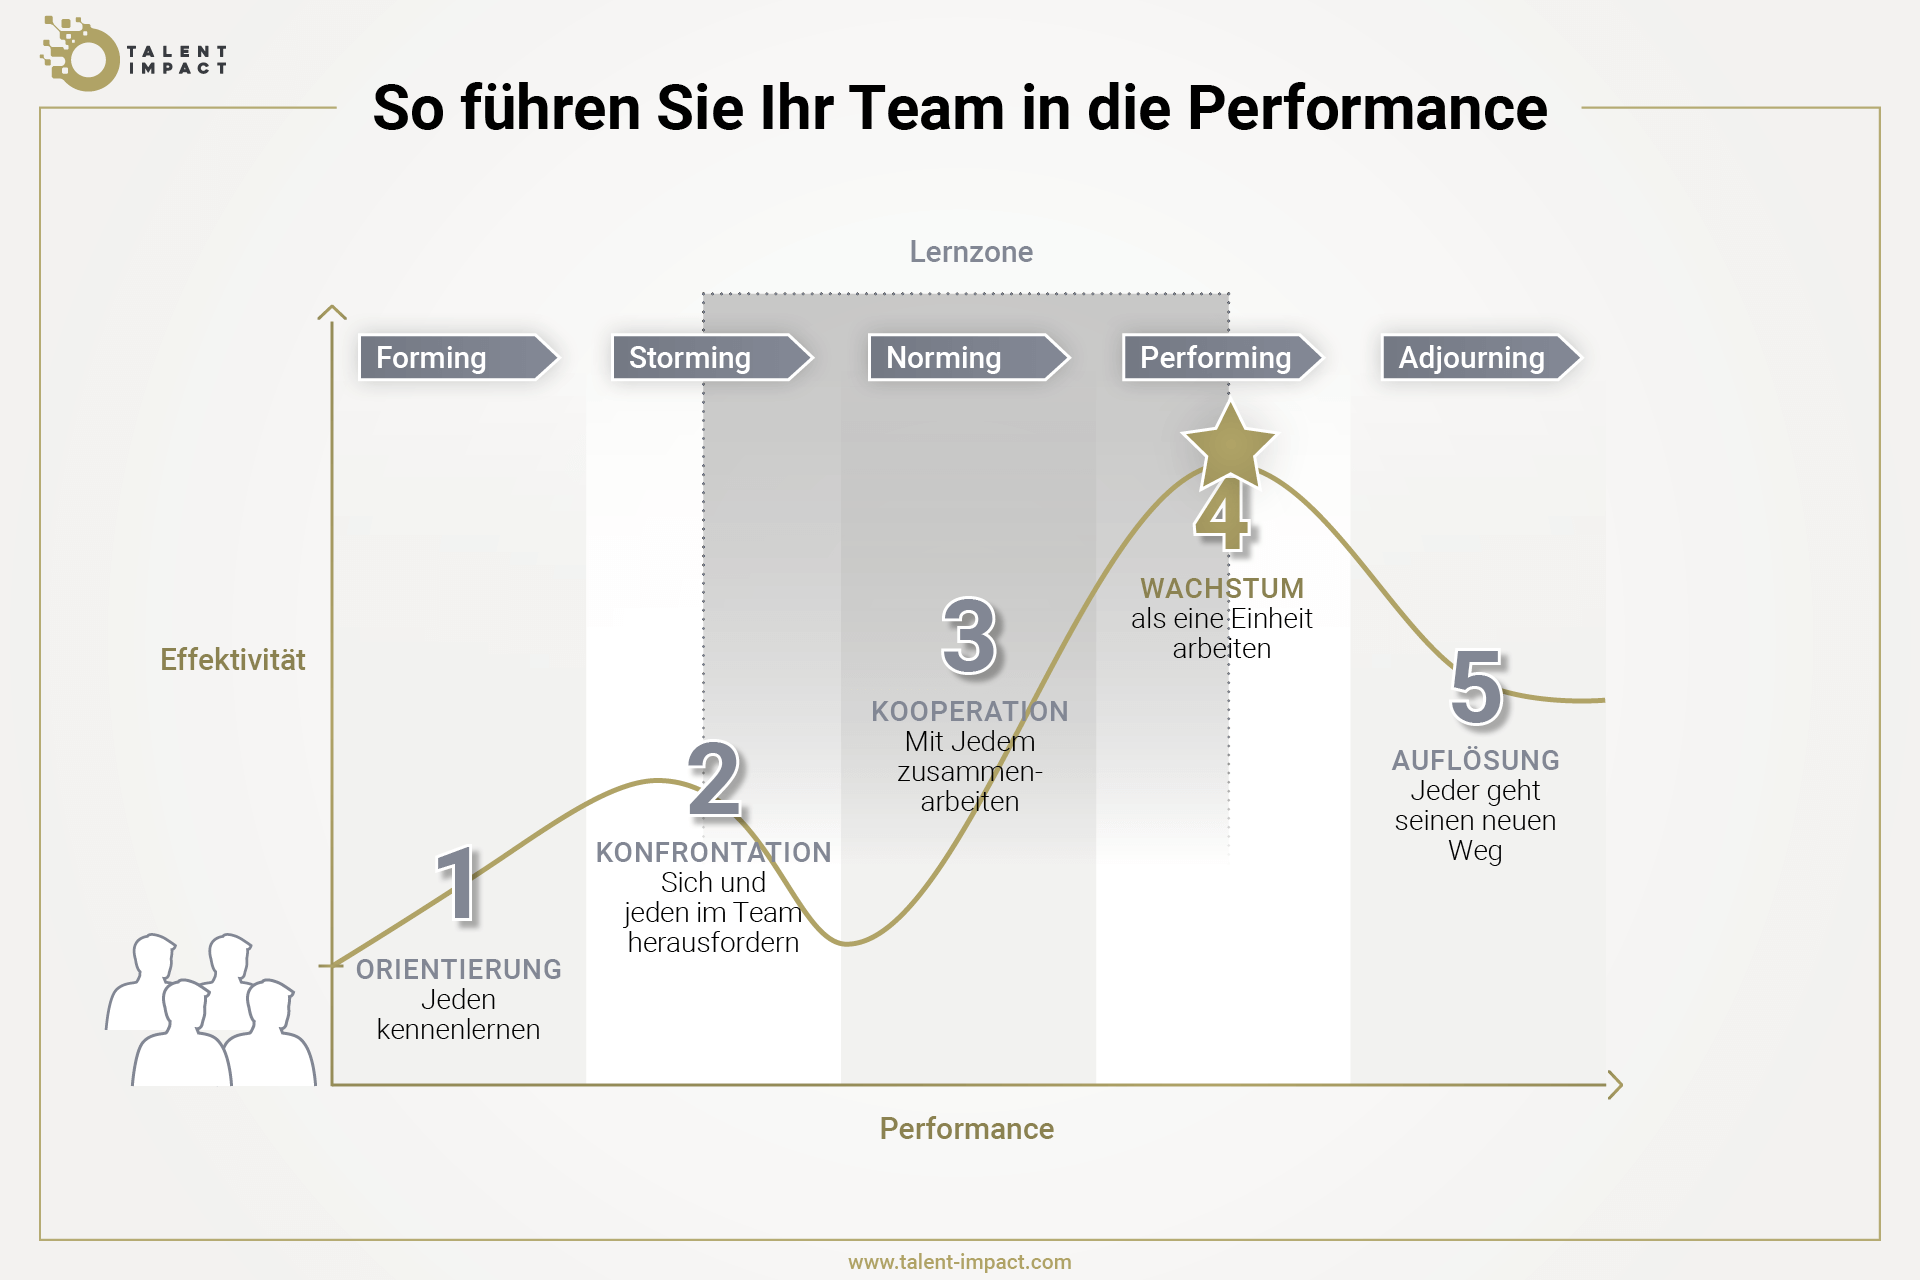 Grafik, die zeigt, wie ein Team sich in fünf Phasen in die Performance entwickelt